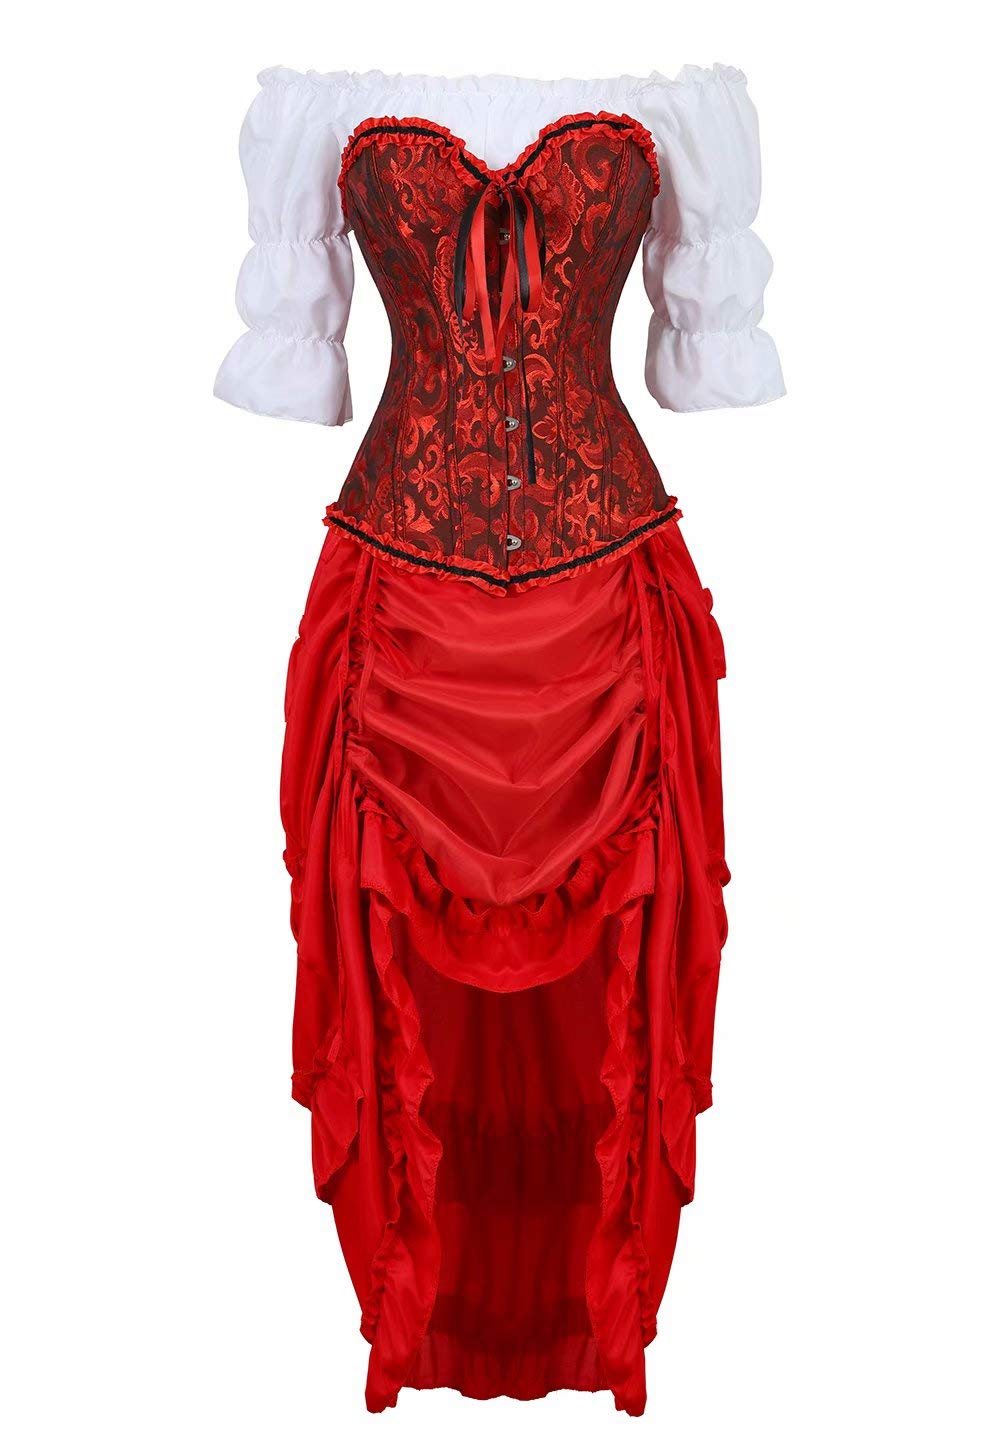 Josamogre Steampunk Corsagenkleid Corsage korsett bustier kleider Kostüm Spitzenrock und Bluse für Karneval Fasching Halloween Rot S